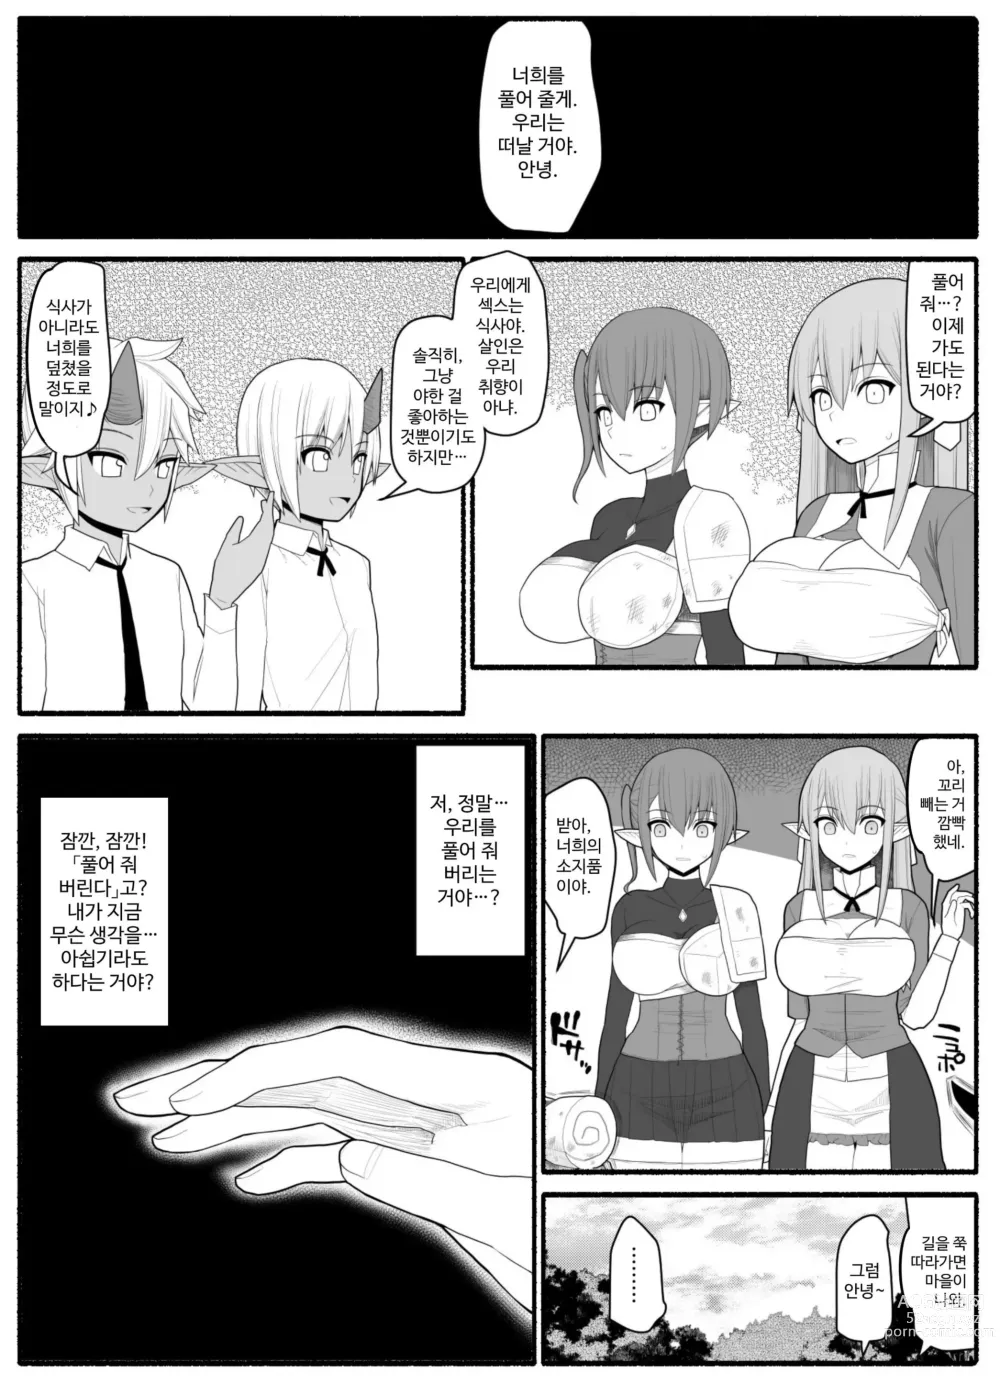 Page 35 of doujinshi Onna Elf VS Futago Inma